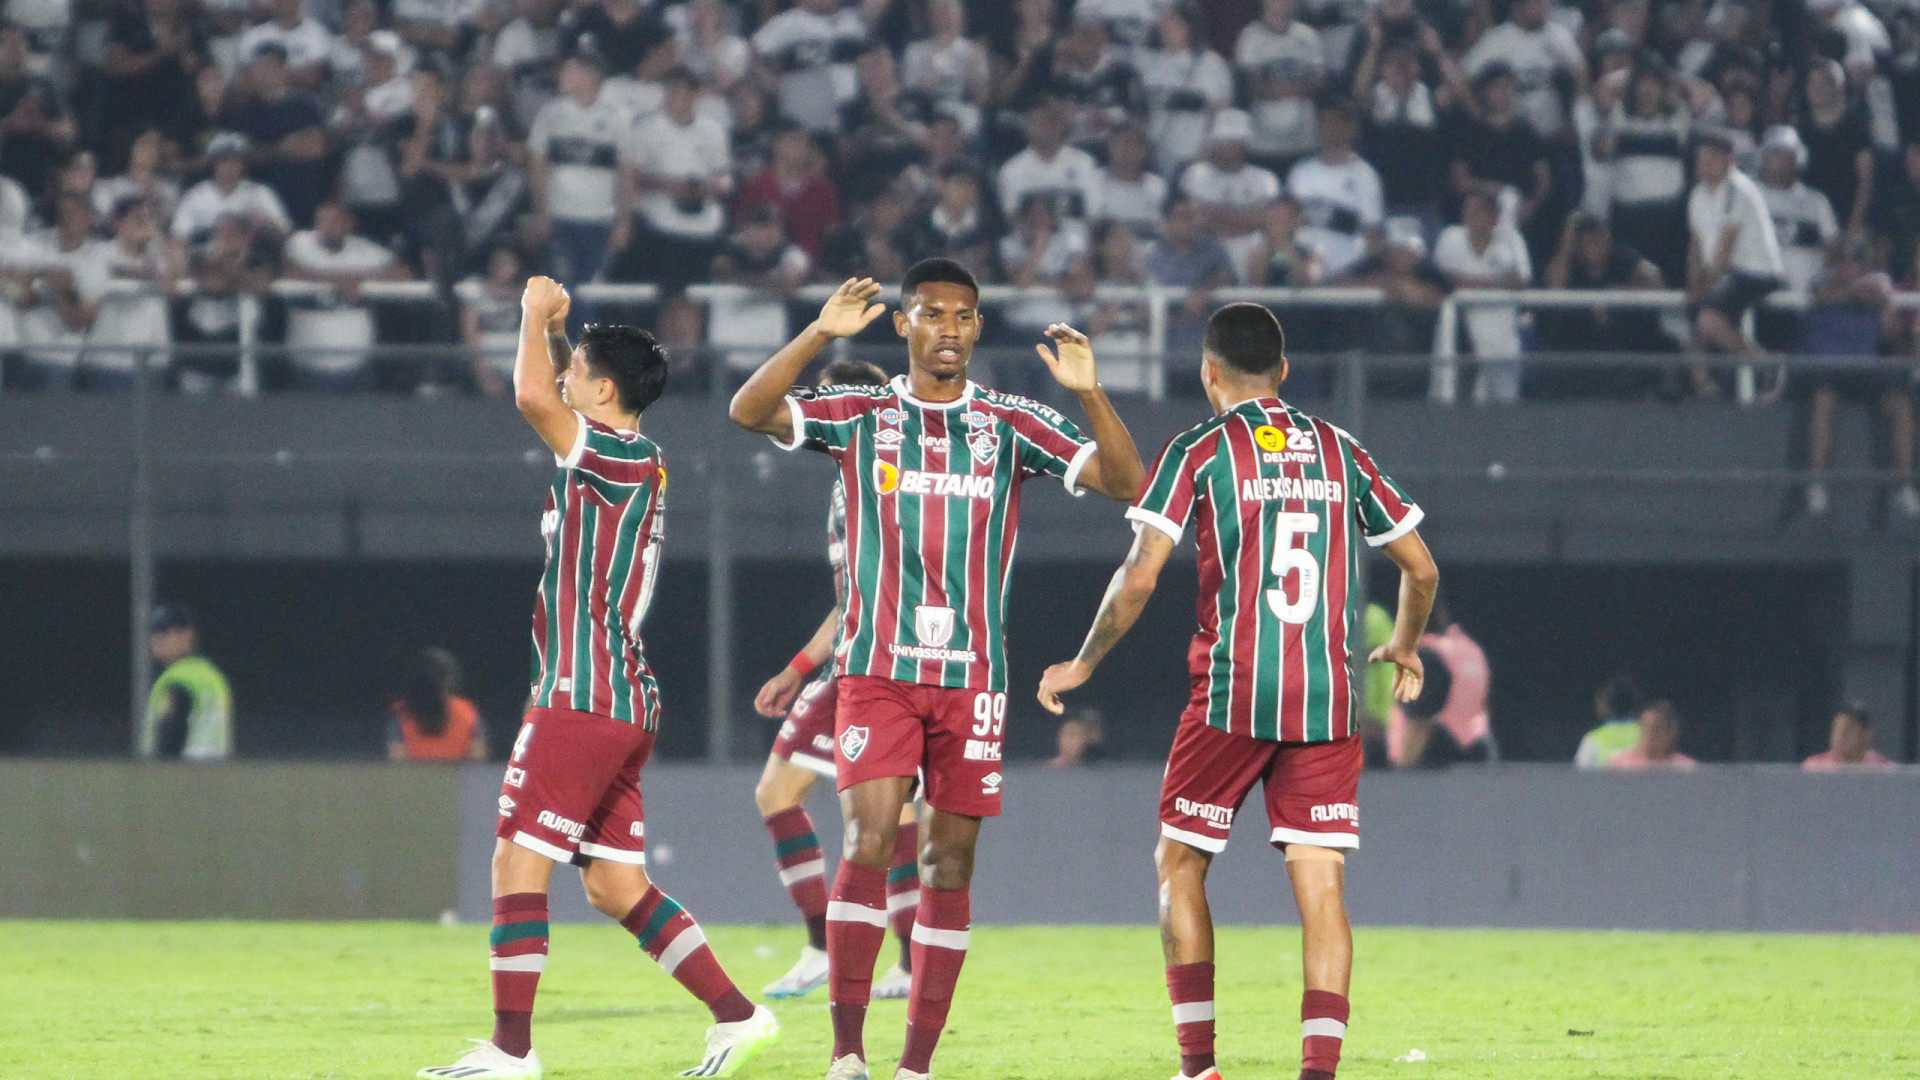 Campeões, Fluminense e São Paulo duelam desfalcados no Maracanã em jogo com troca de faixas